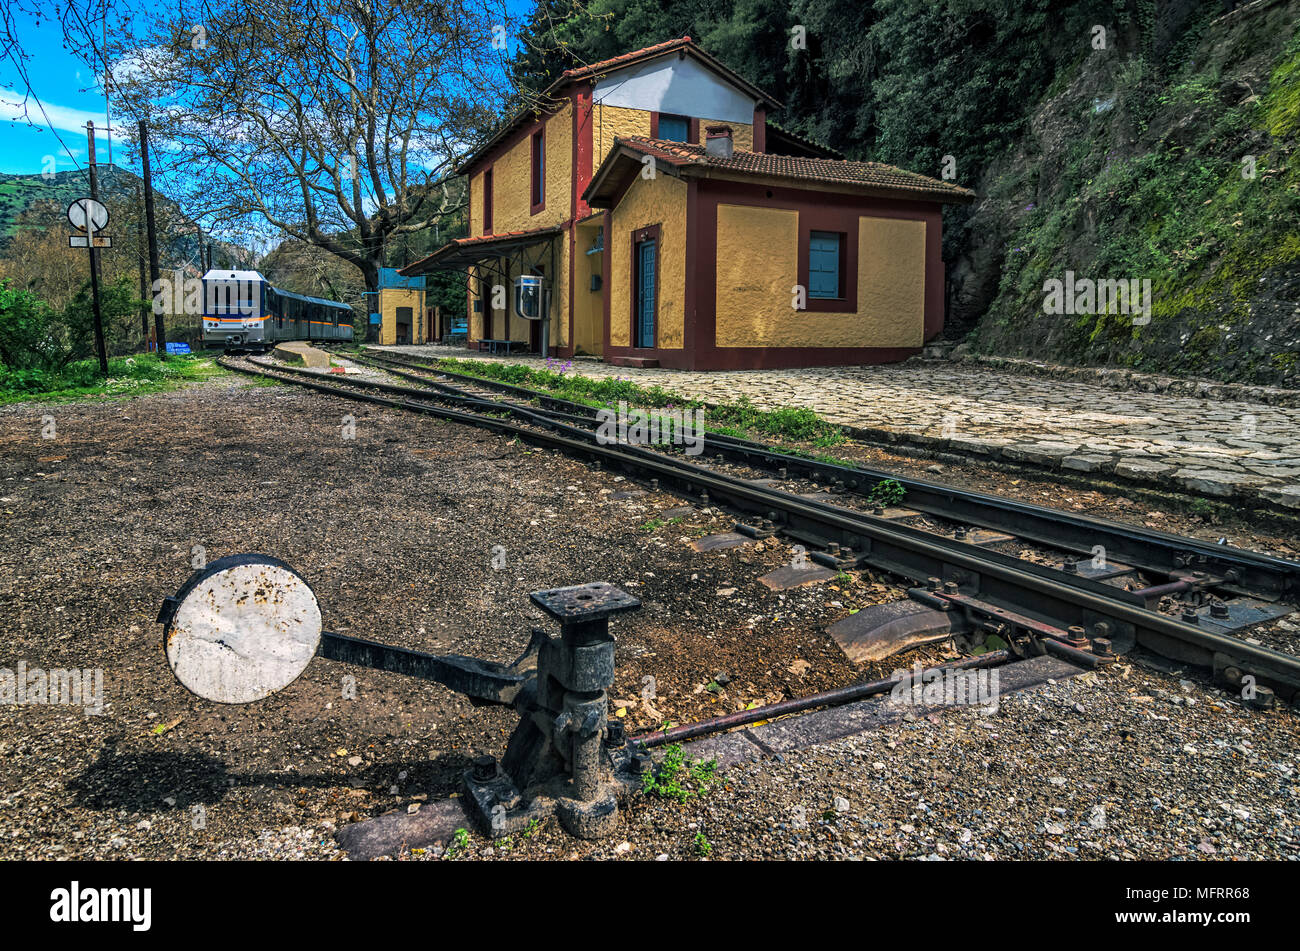 Diakopto - Kalavrita route Odontotos rack railway. Mega Spileon train station in Zachlorou village, Peloponnese - Greece Stock Photo